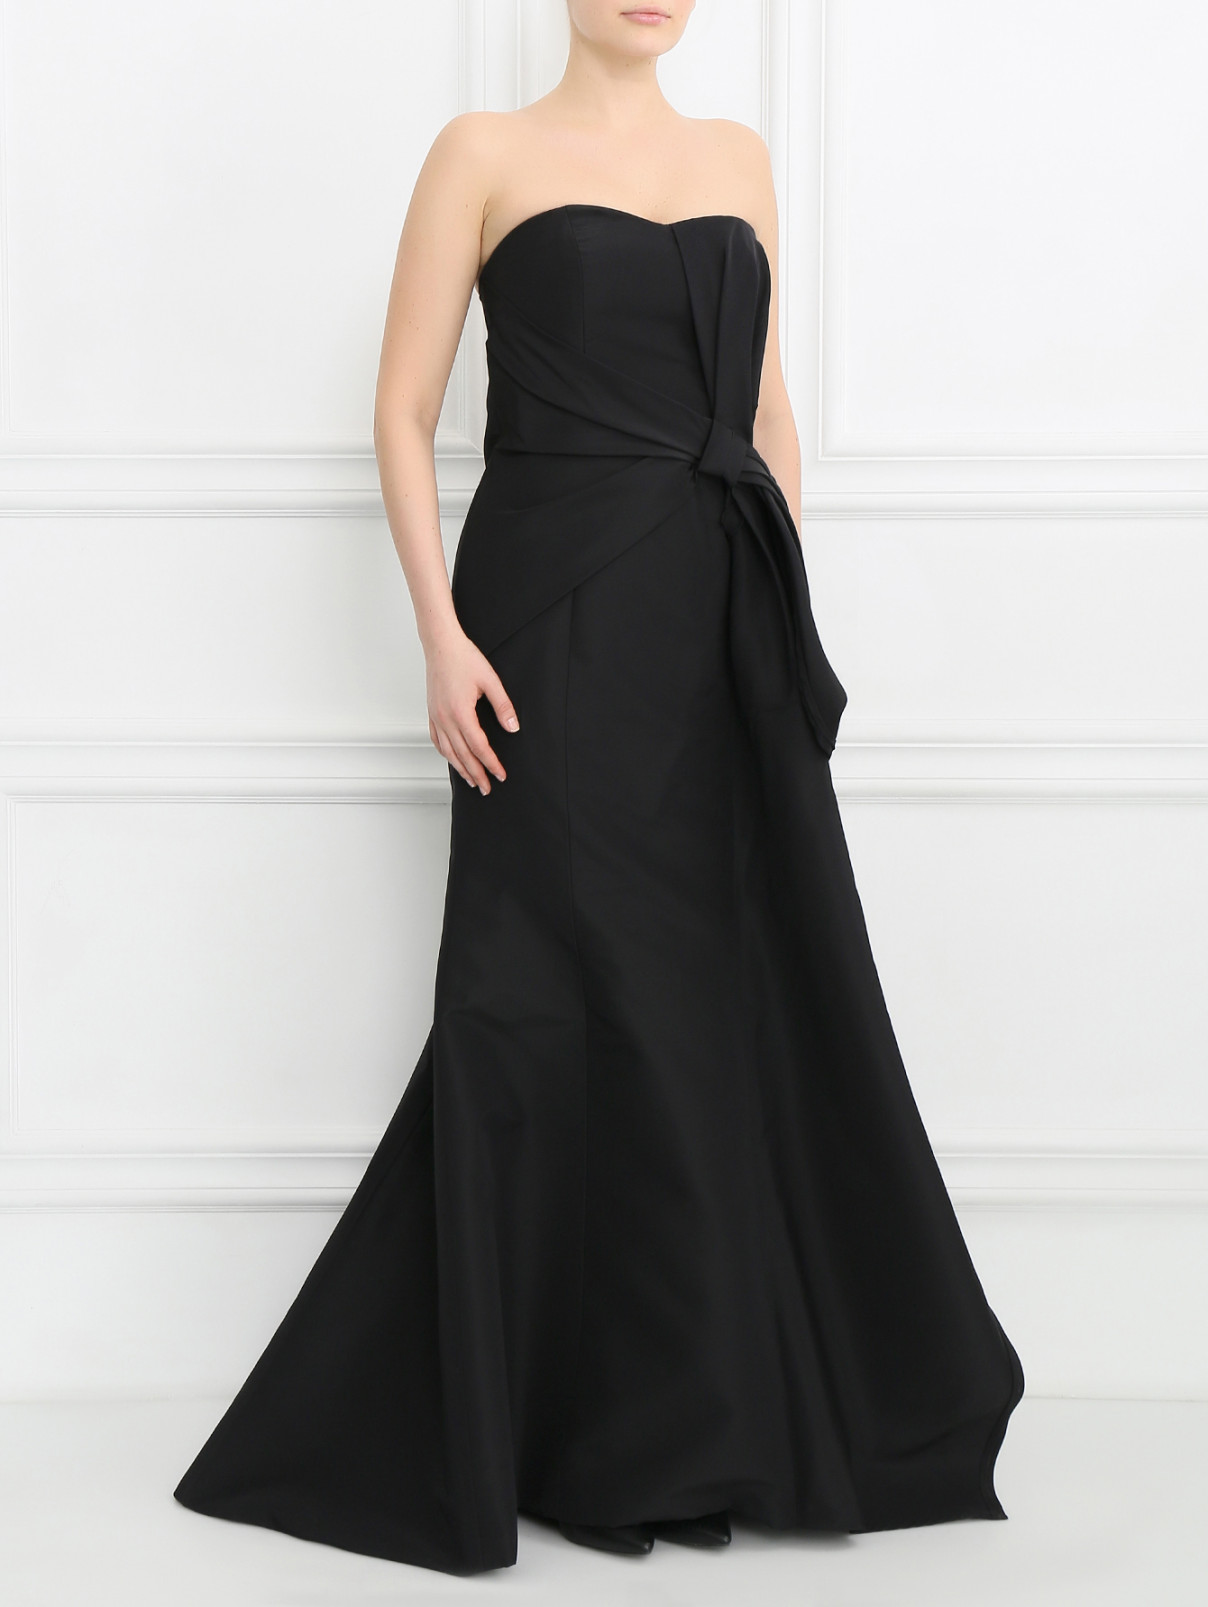 Платье-макси с драпировкой и декоративным бантом Carolina Herrera  –  Модель Общий вид  – Цвет:  Черный